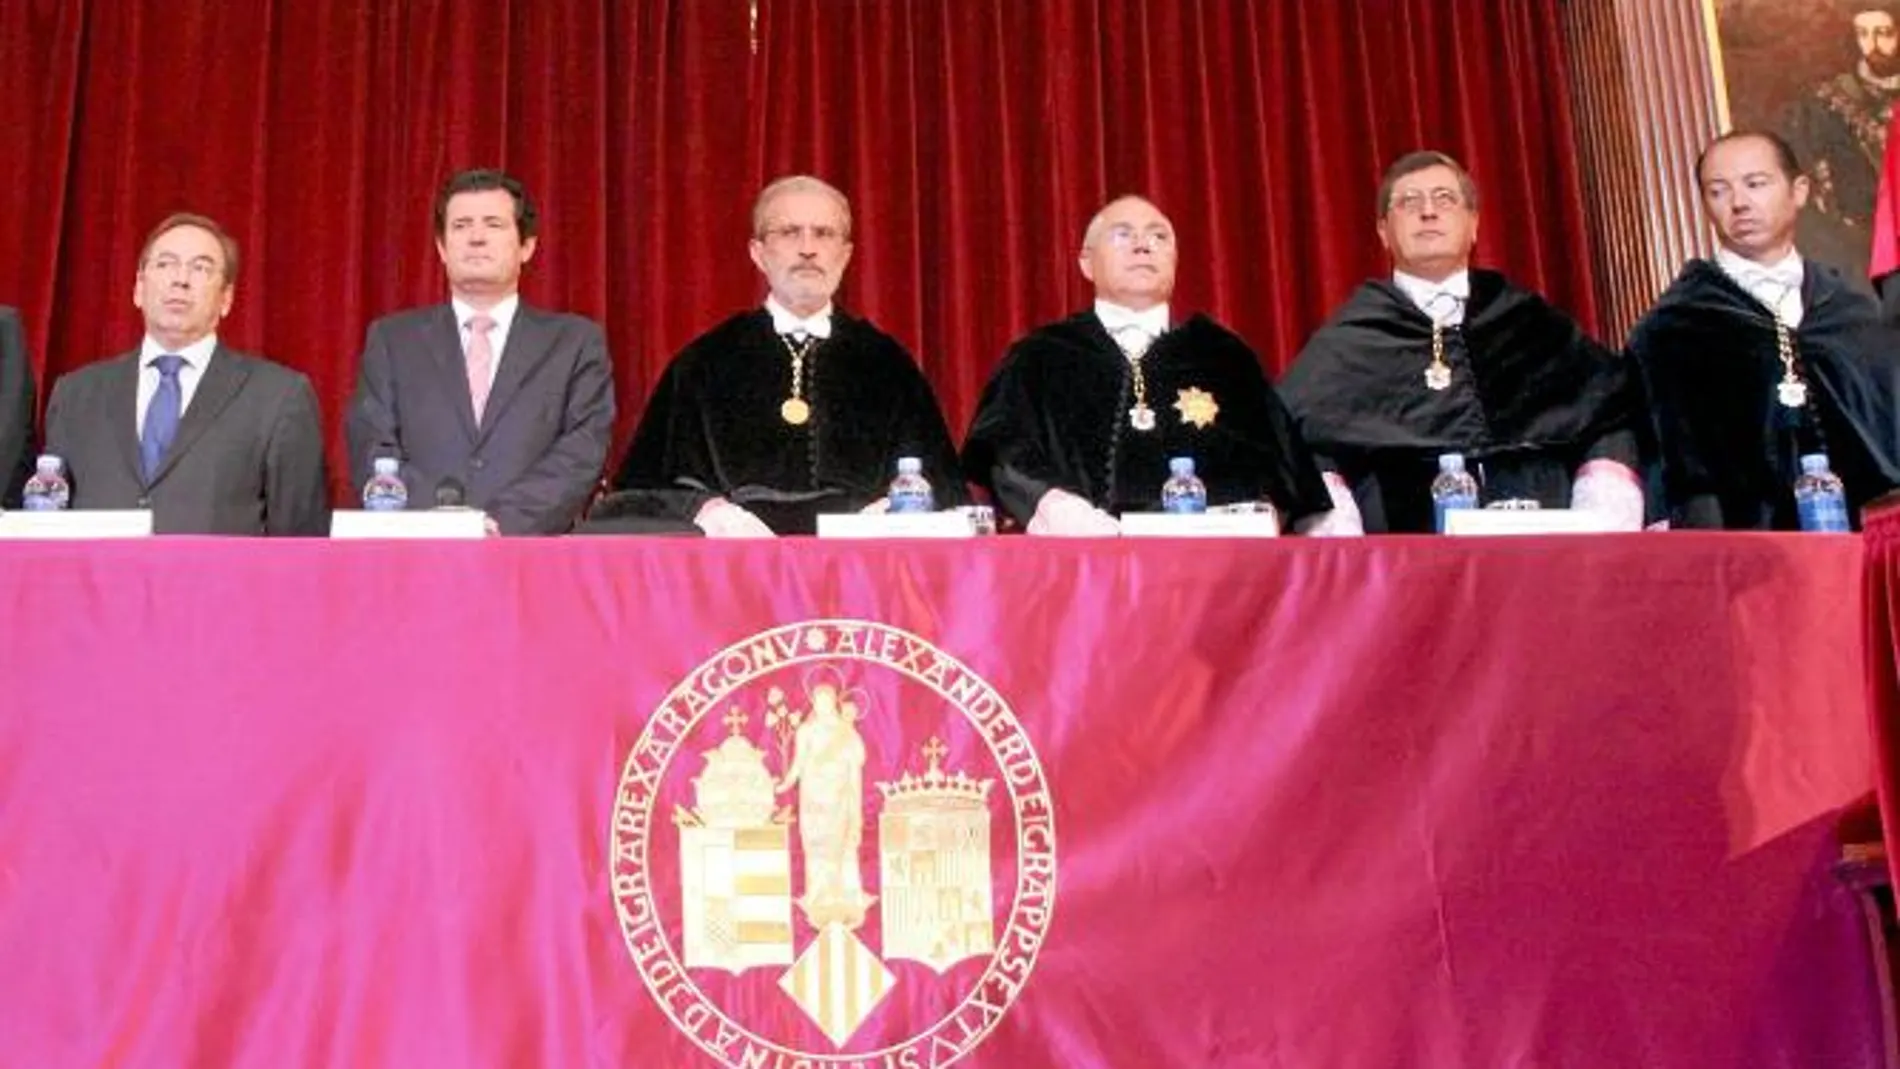 El conseller de Sanidad, Luis Rosado, el conseller de Educación, José Císcar, el rector de la UV, Esteban Morcillo, junto a los rectores de la UPV, la UMH y la VIU